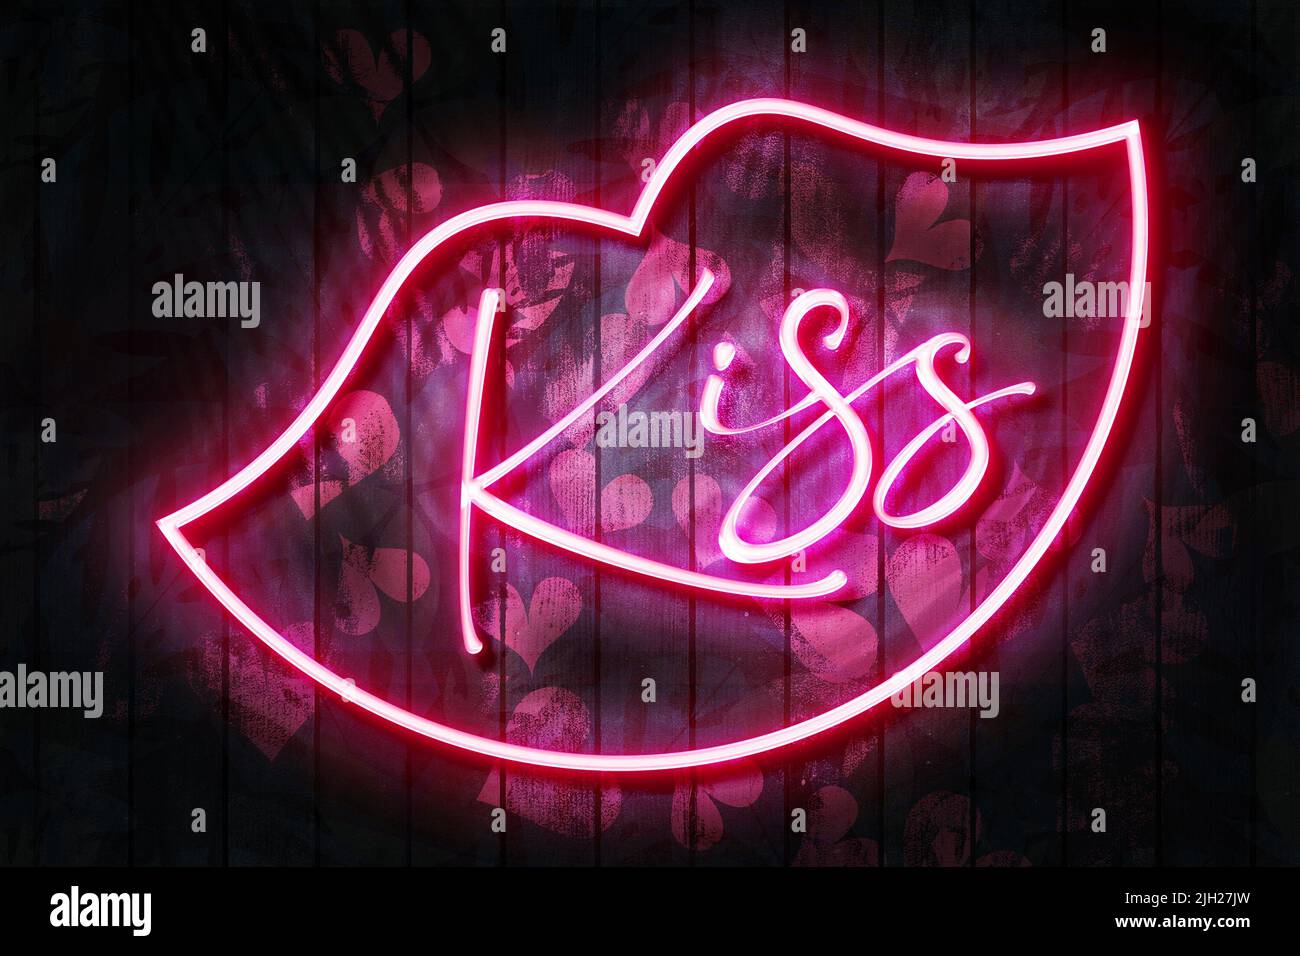 Kiss Neonschild mit Neonlippen an einer dunklen Holzwand, 3D Illustration mit rotem Herz Hintergrund. Stockfoto